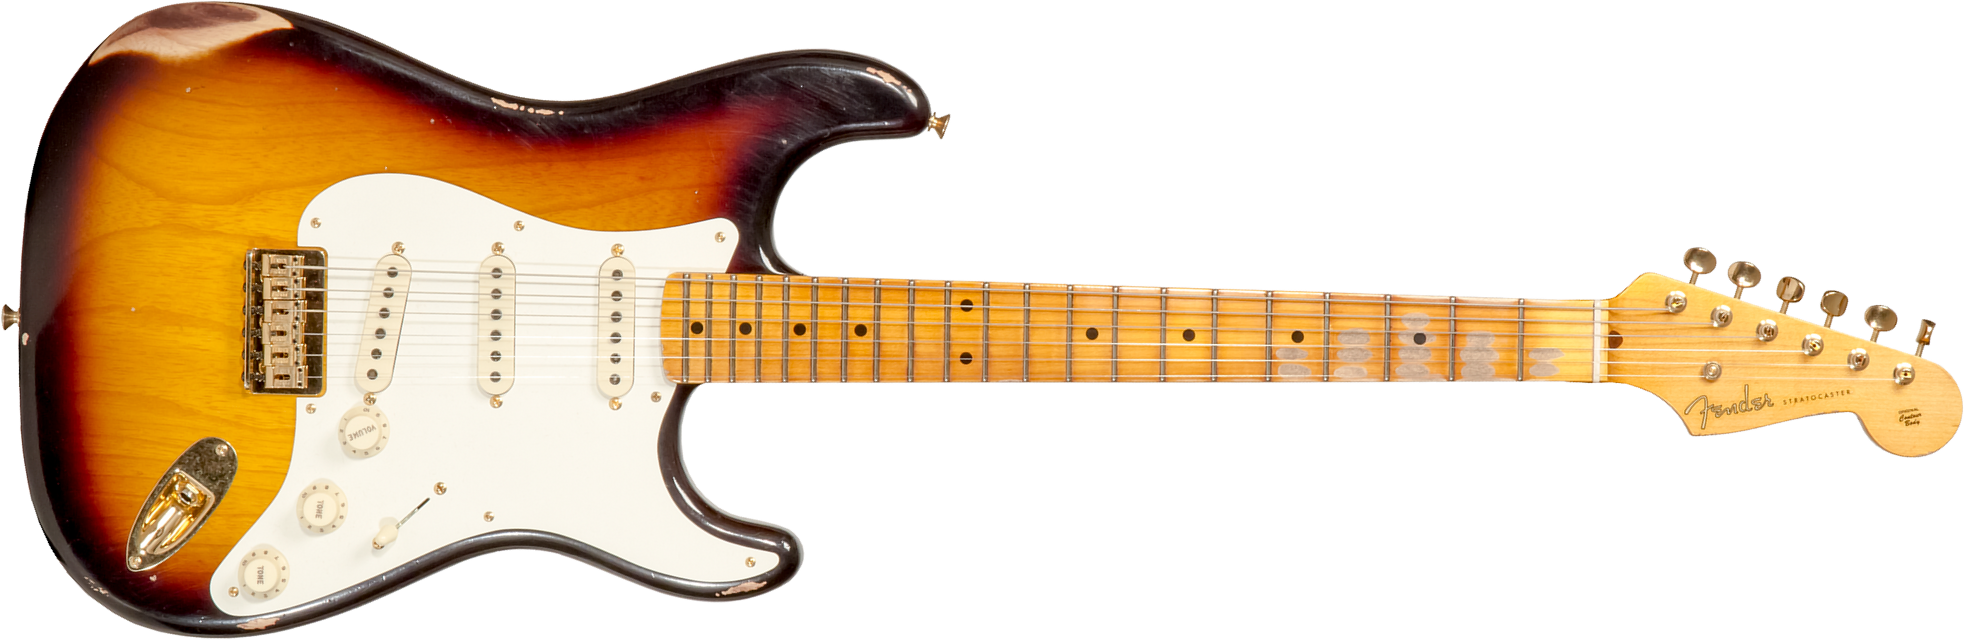 Fender Custom Shop Strat 1956 Hardtail Gold Hardware 3s Ht Mn #cz565119 - Relic Faded 2-color Sunburst - Guitare Électrique Forme Str - Main picture